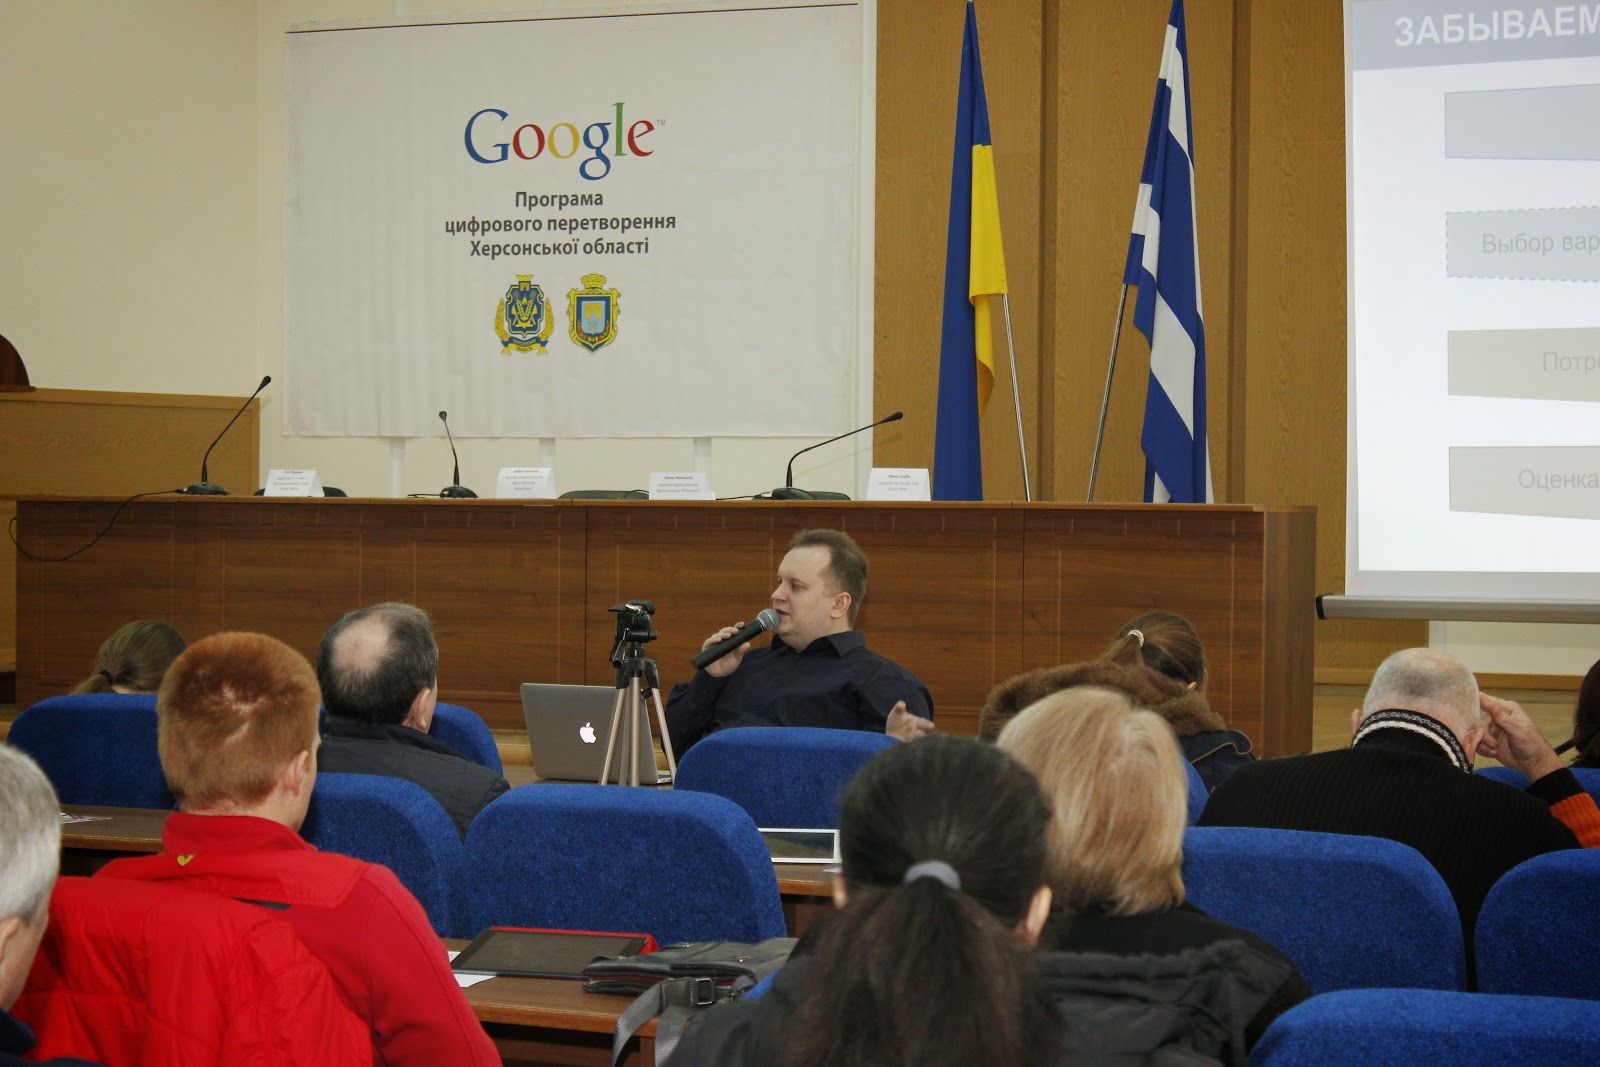 Google семинар для бизнеса в Херсоне